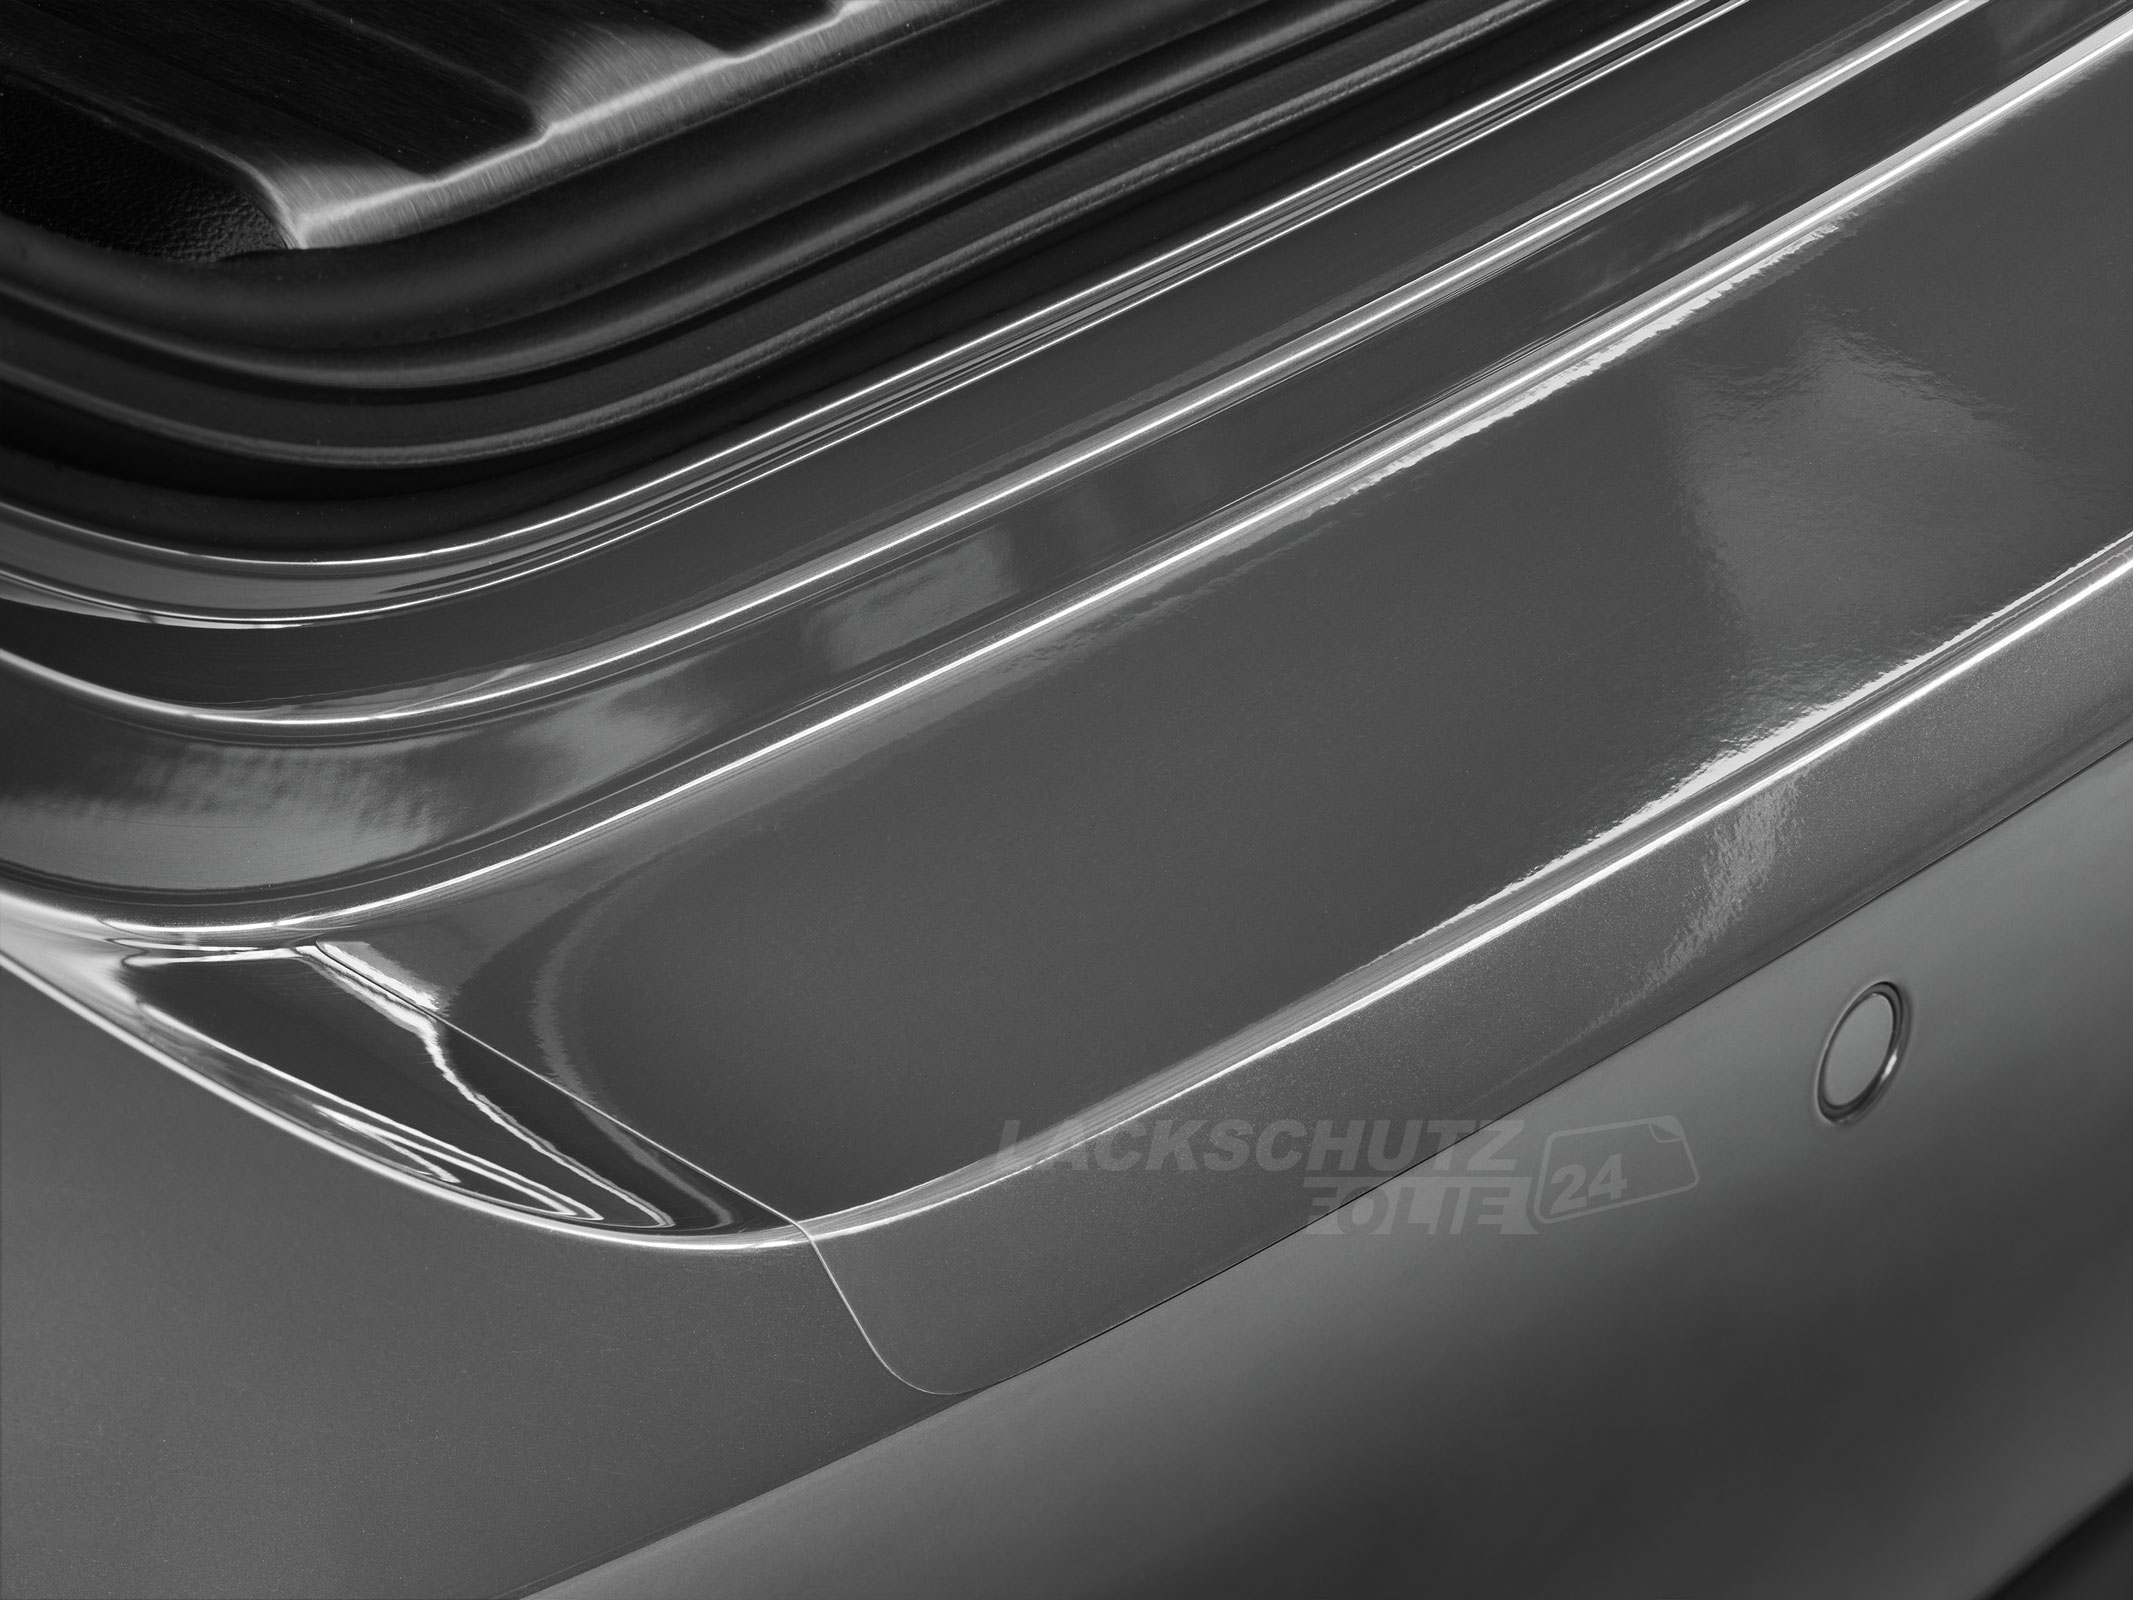 Ladekantenschutzfolie - Transparent Glatt Hochglänzend 150 µm stark für VW / Volkswagen ID.3 ab BJ 11/2019